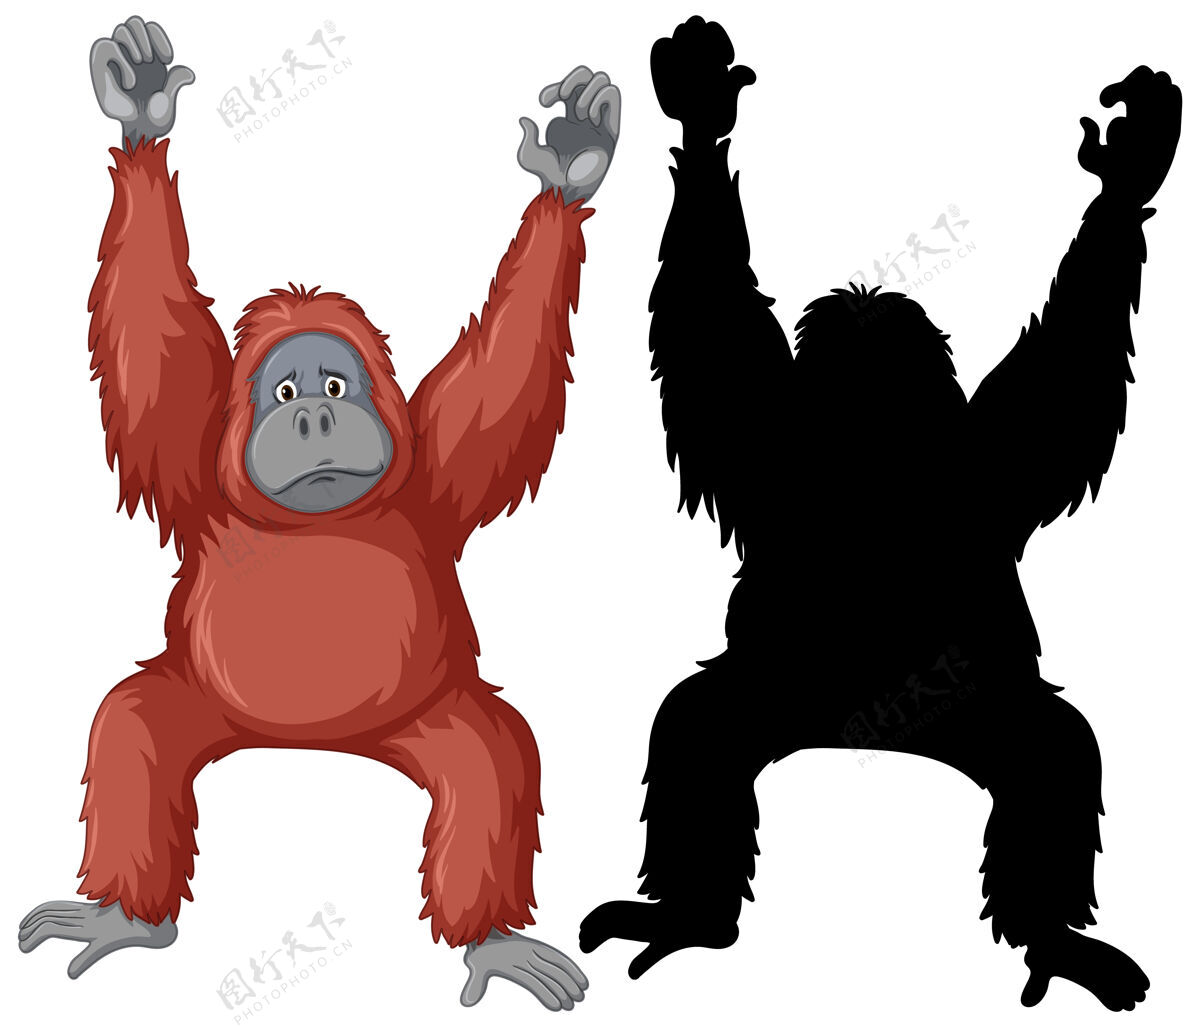 布景红毛猩猩的角色和它在白色背景上的轮廓动物影子动物